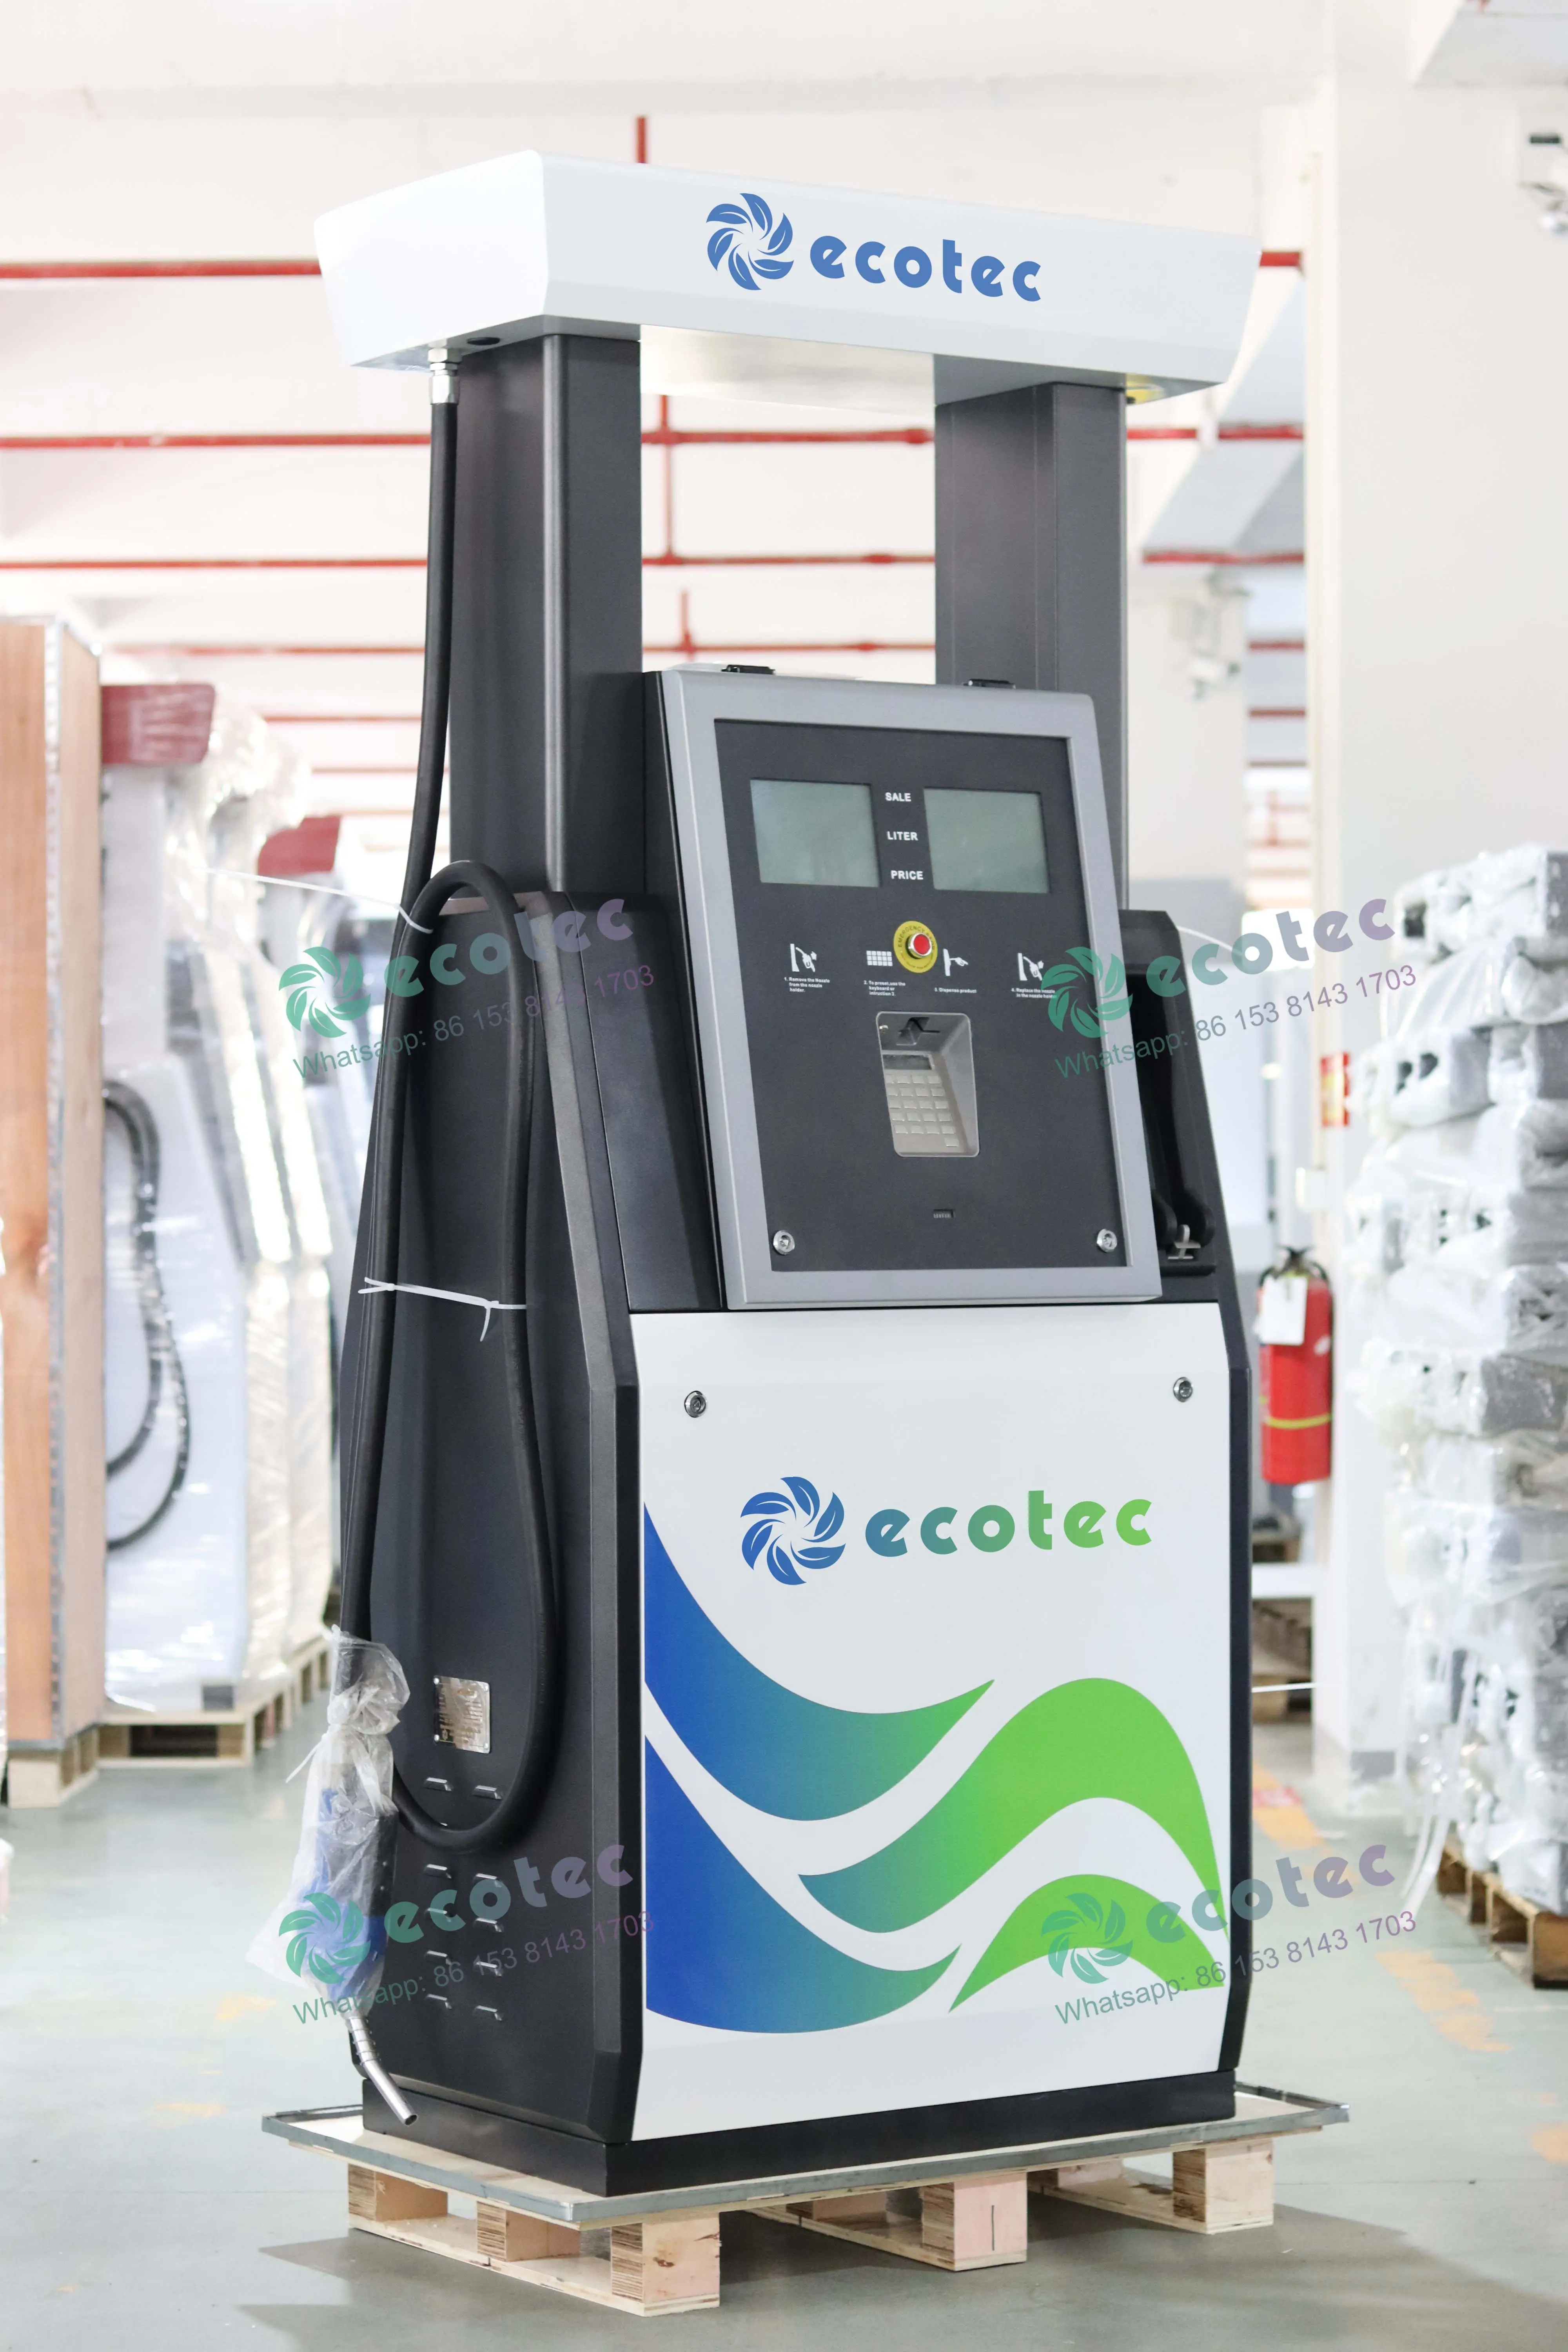 Ecotec Tokheim Distributeur de carburant Équipement de station-service